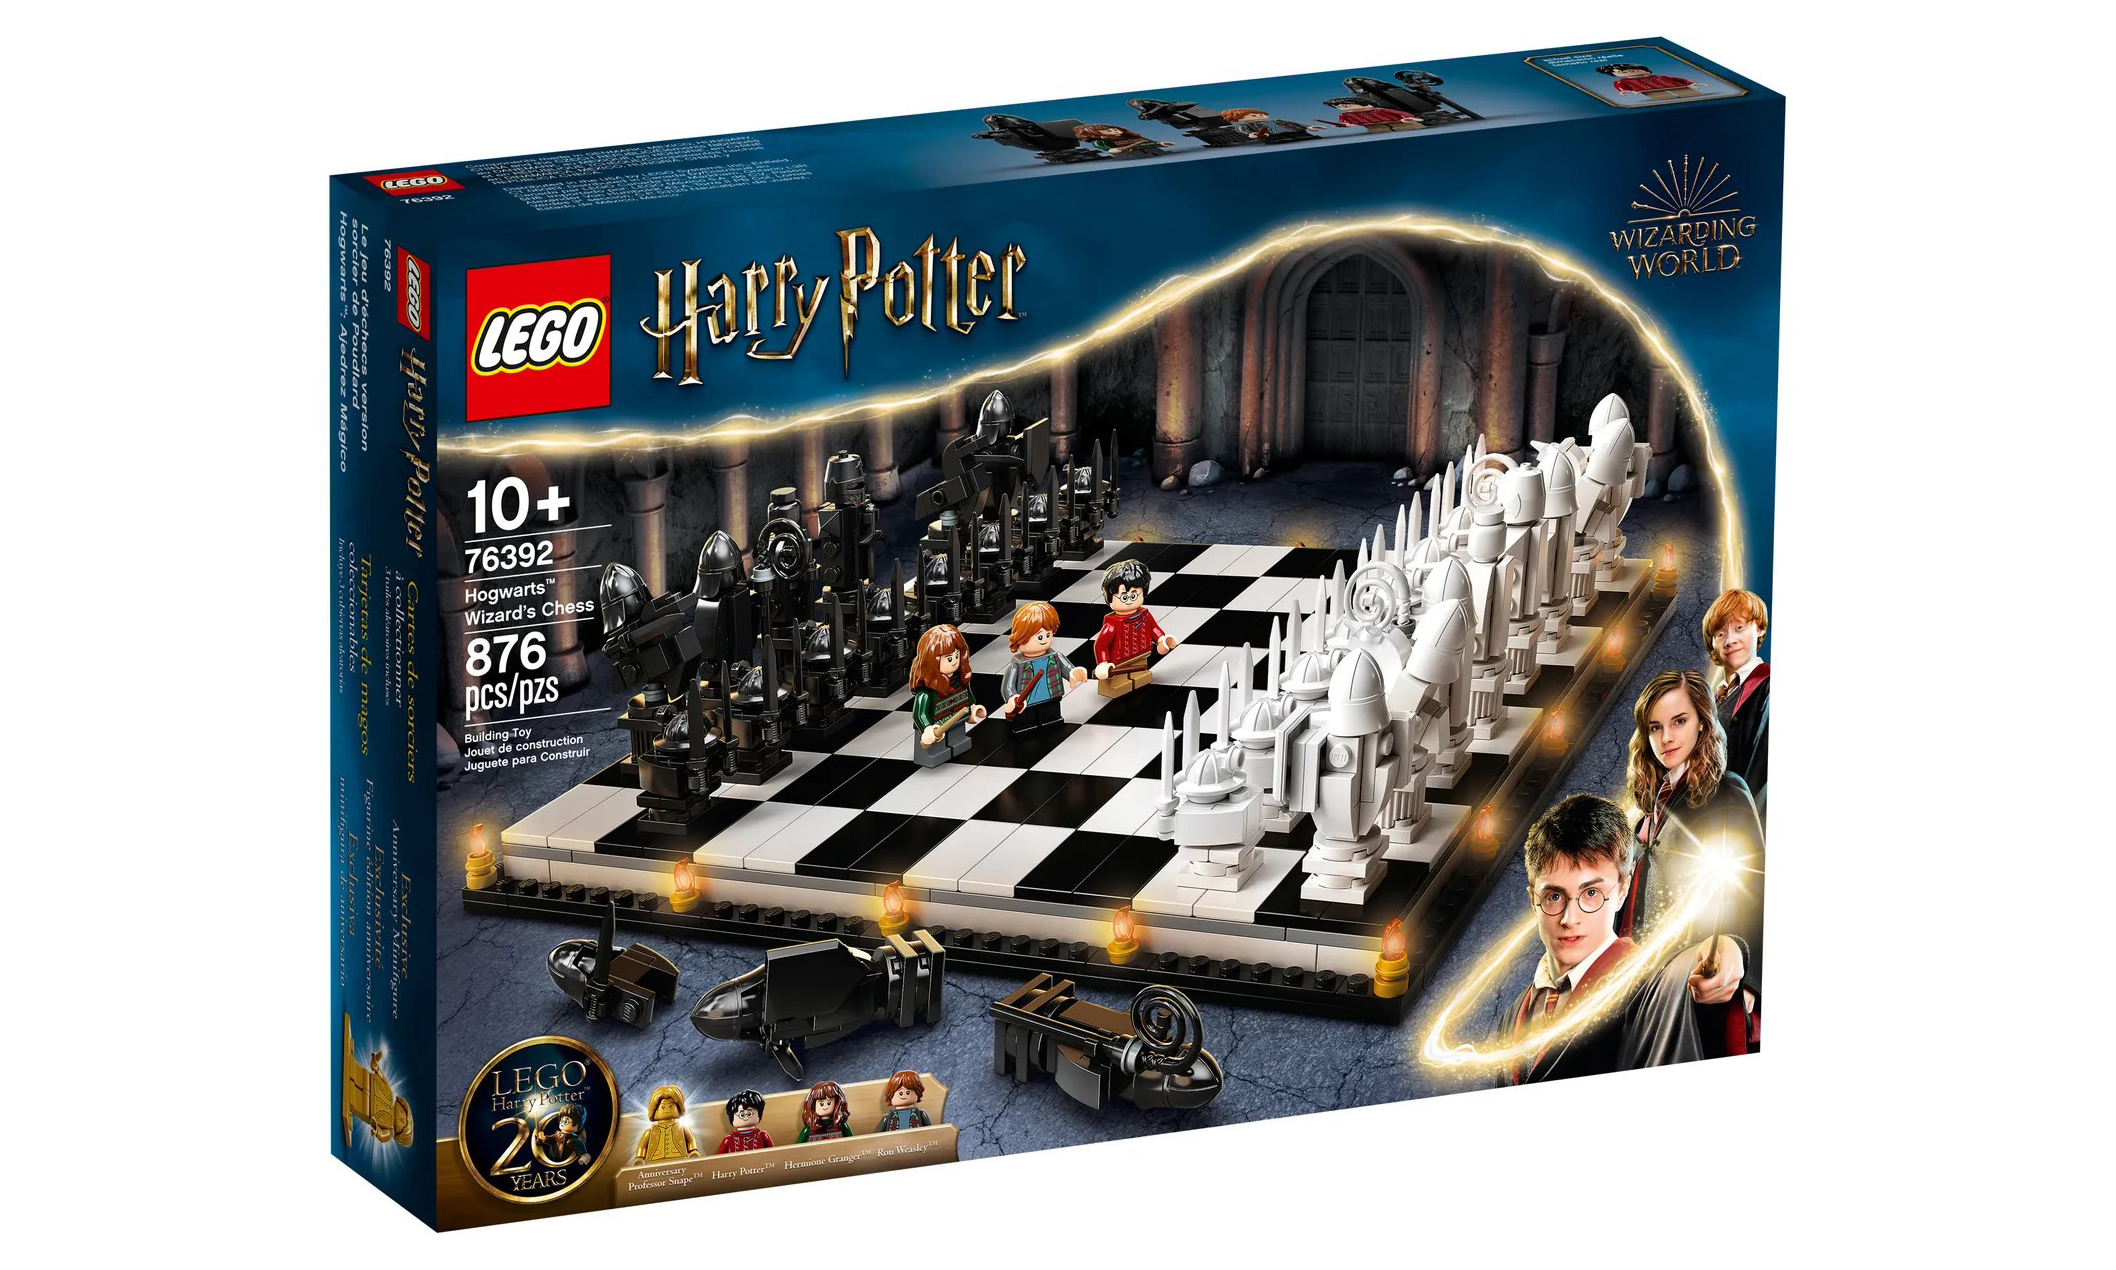 LEGO 76392《哈利波特》霍格沃茨巫师棋套组亮相